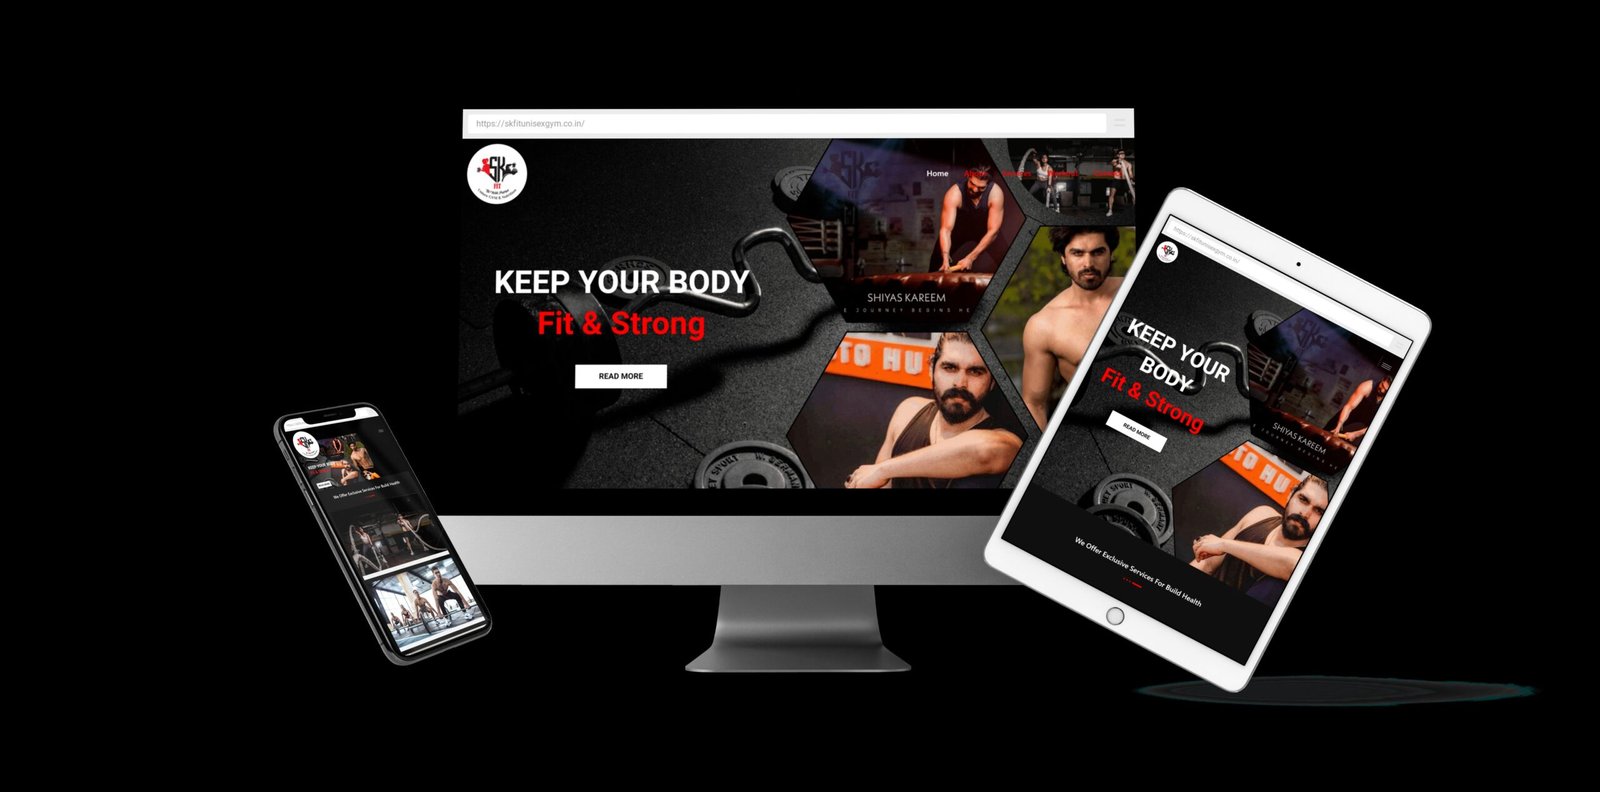 Gym Website